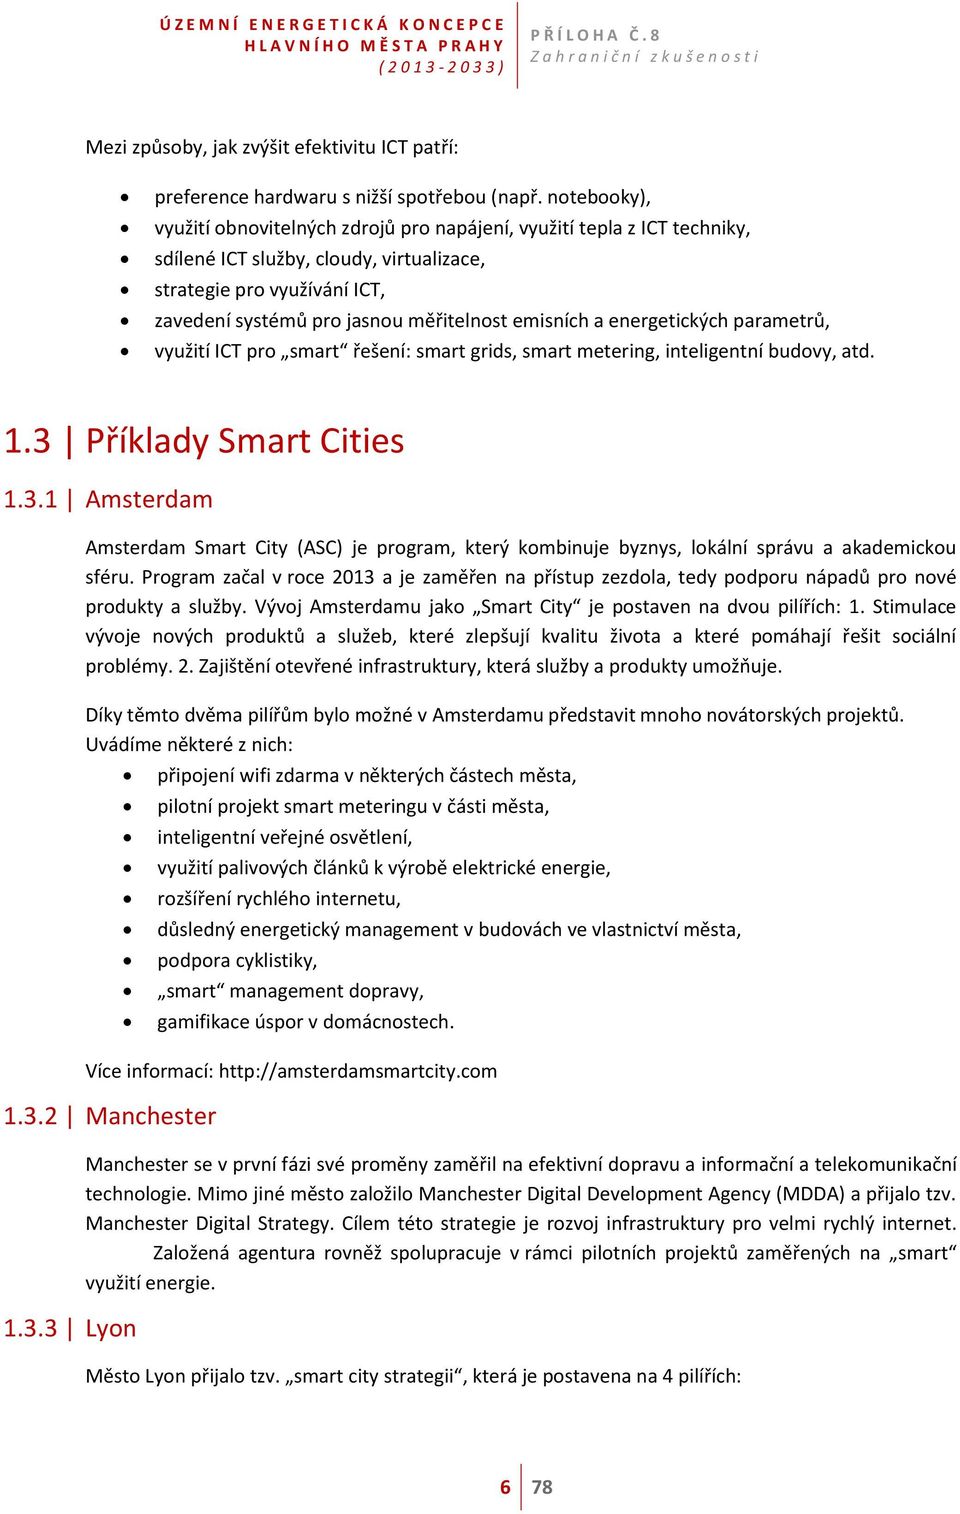 emisních a energetických parametrů, využití ICT pro smart řešení: smart grids, smart metering, inteligentní budovy, atd. 1.3 